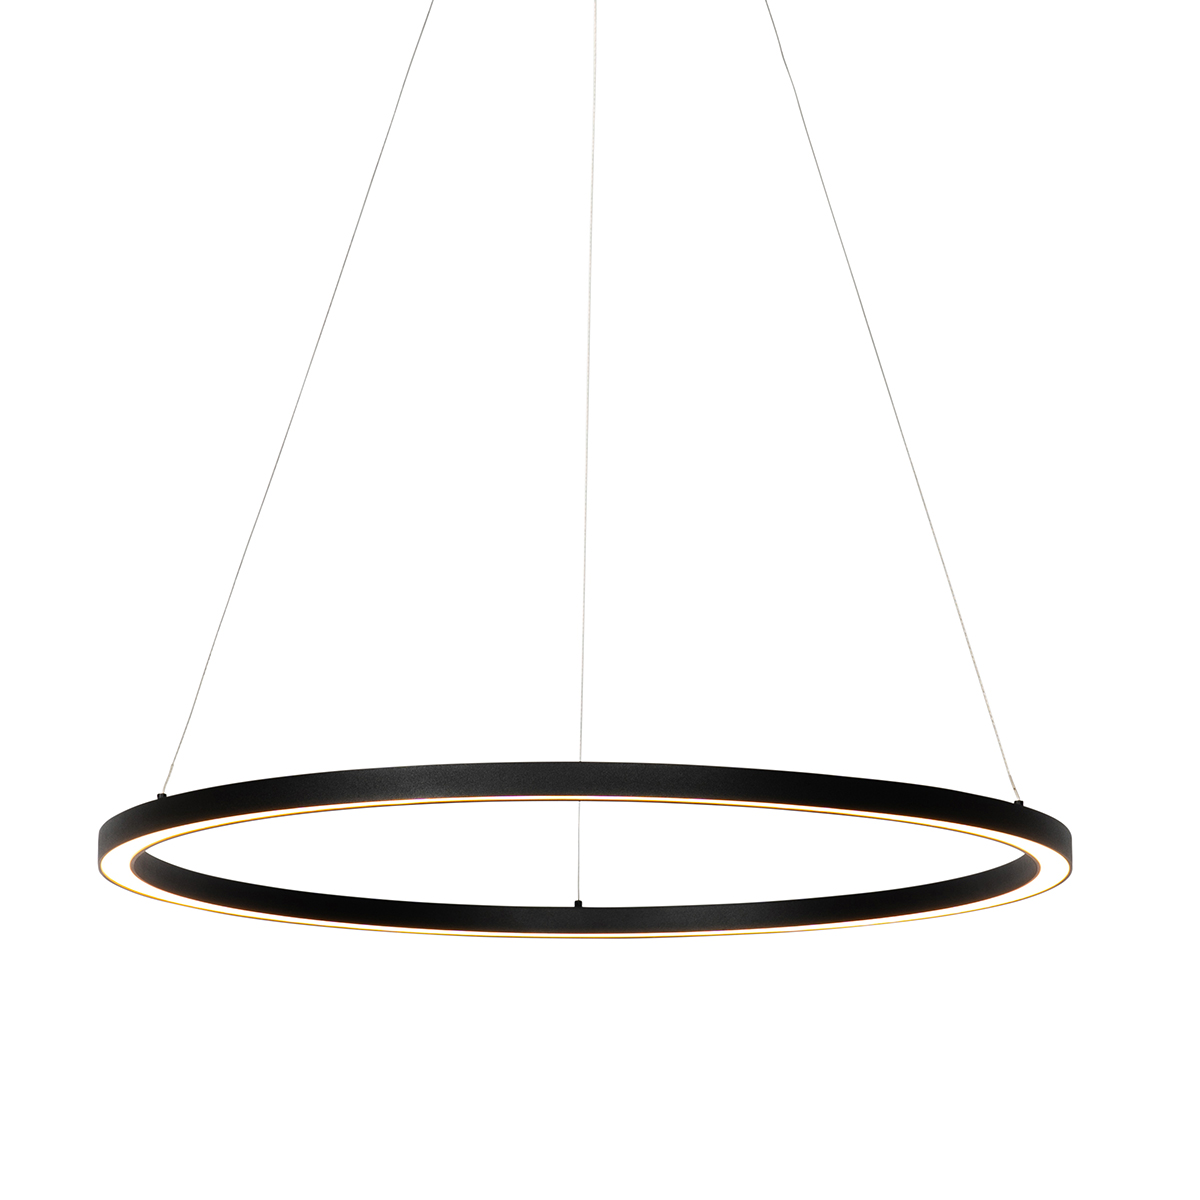 Lampada a sospensione nera 80 cm con LED dimmerabile in 3 fasi - Girello